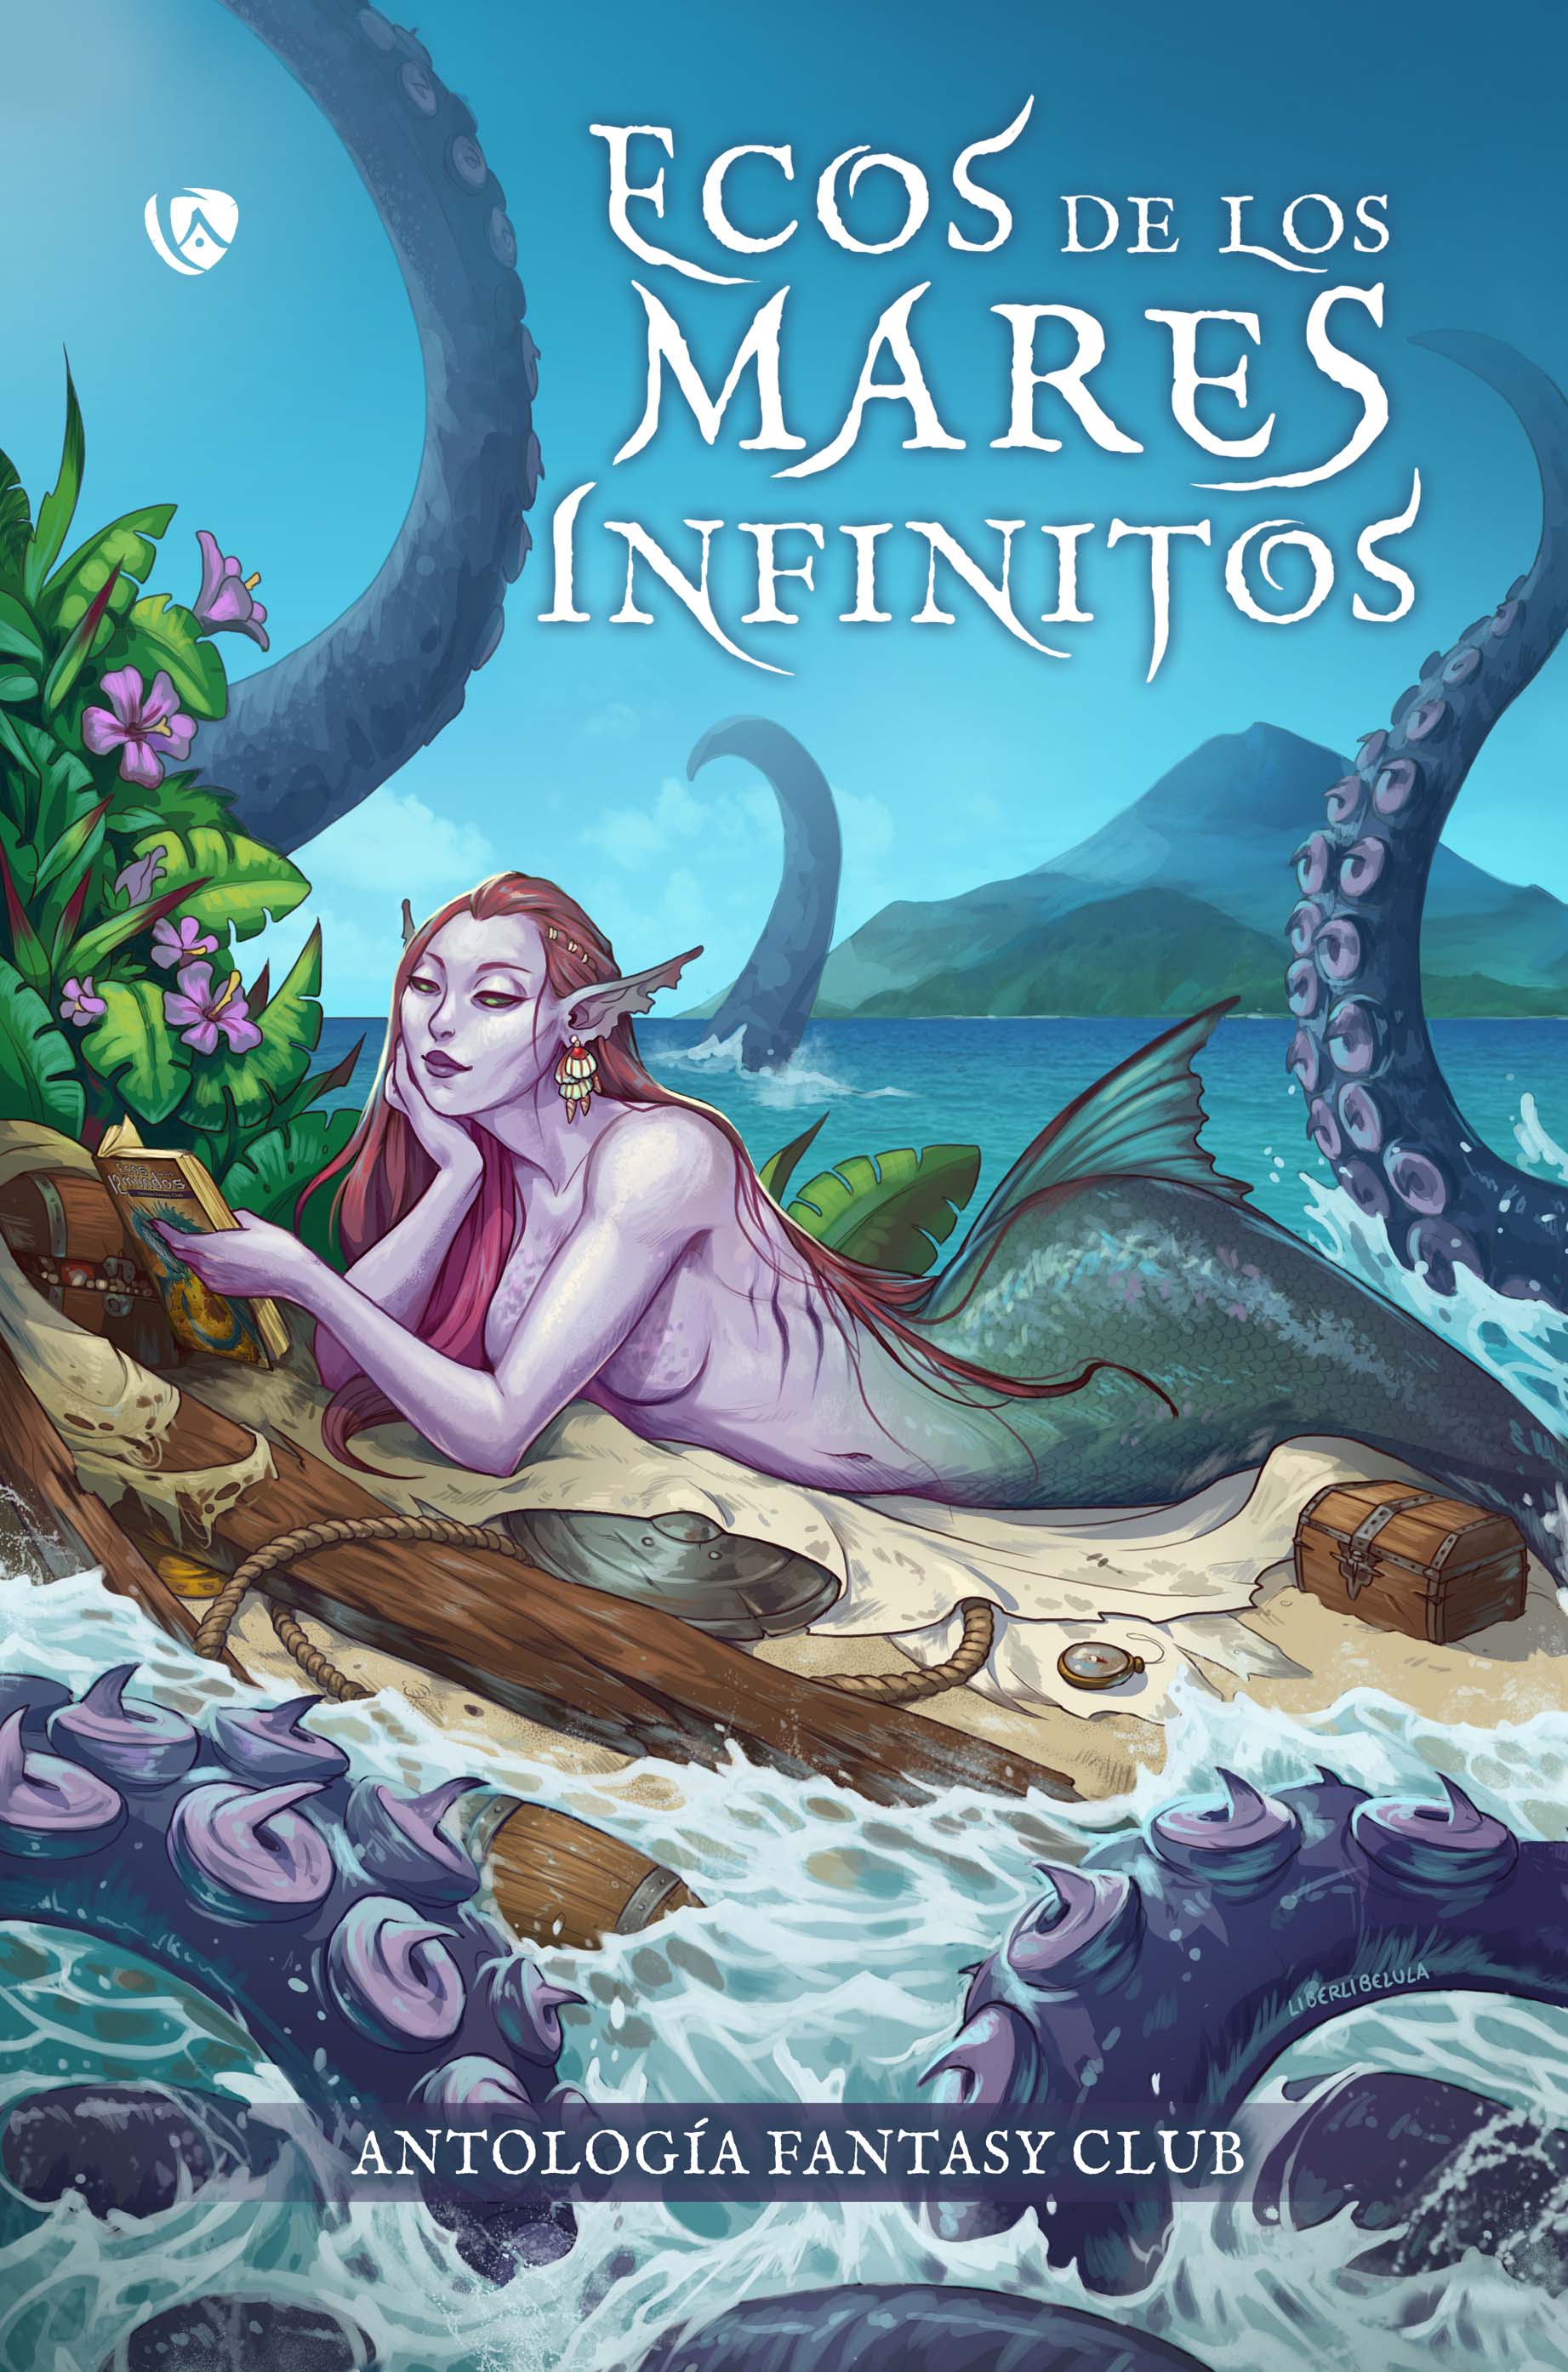 Ecos de los mares infinitos. Antología Fantasy Club